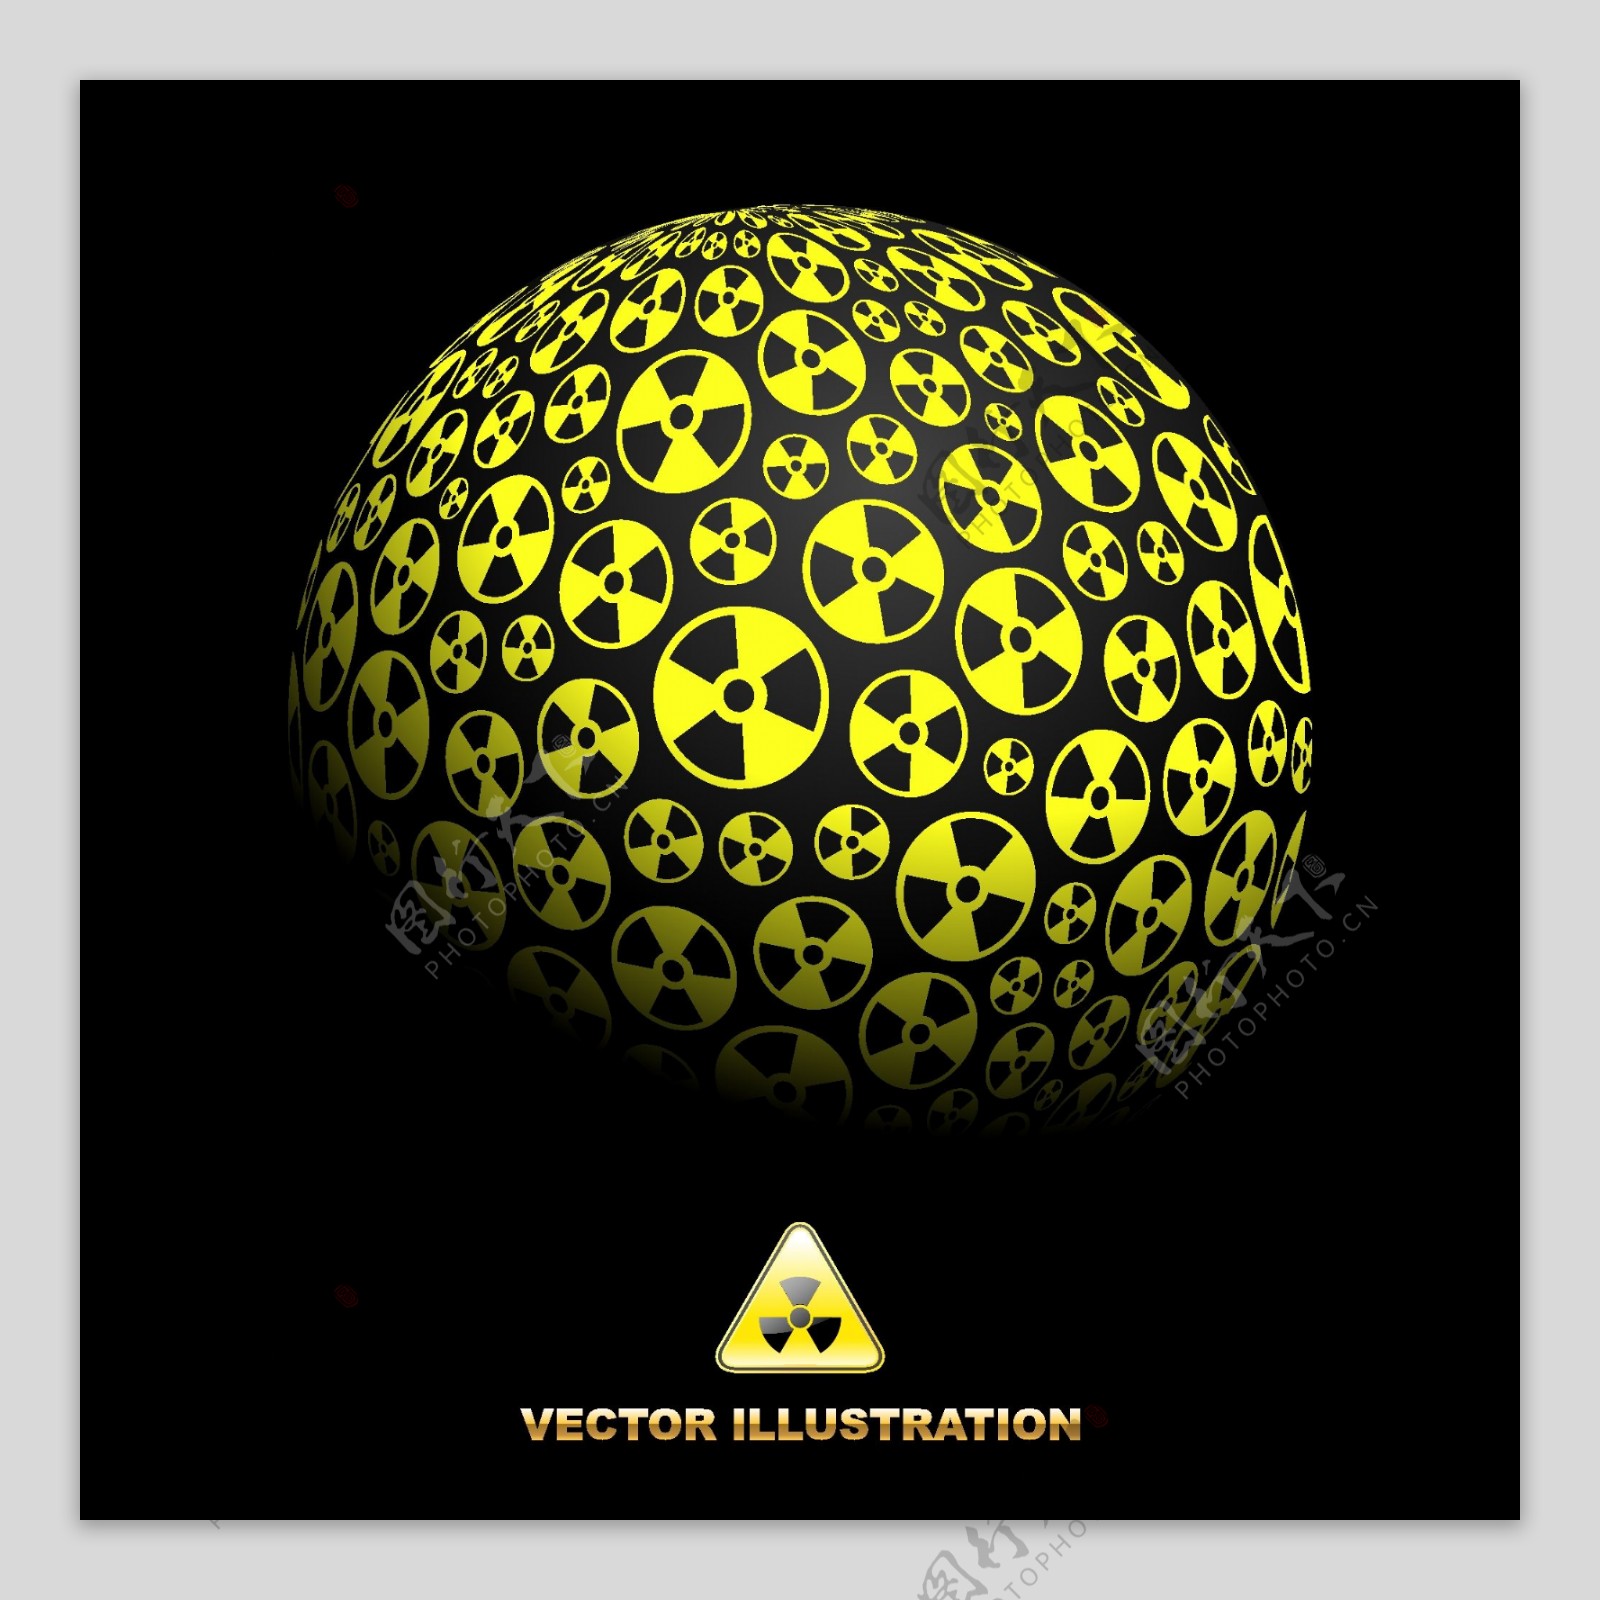 核辐射标志组成的圆球图片